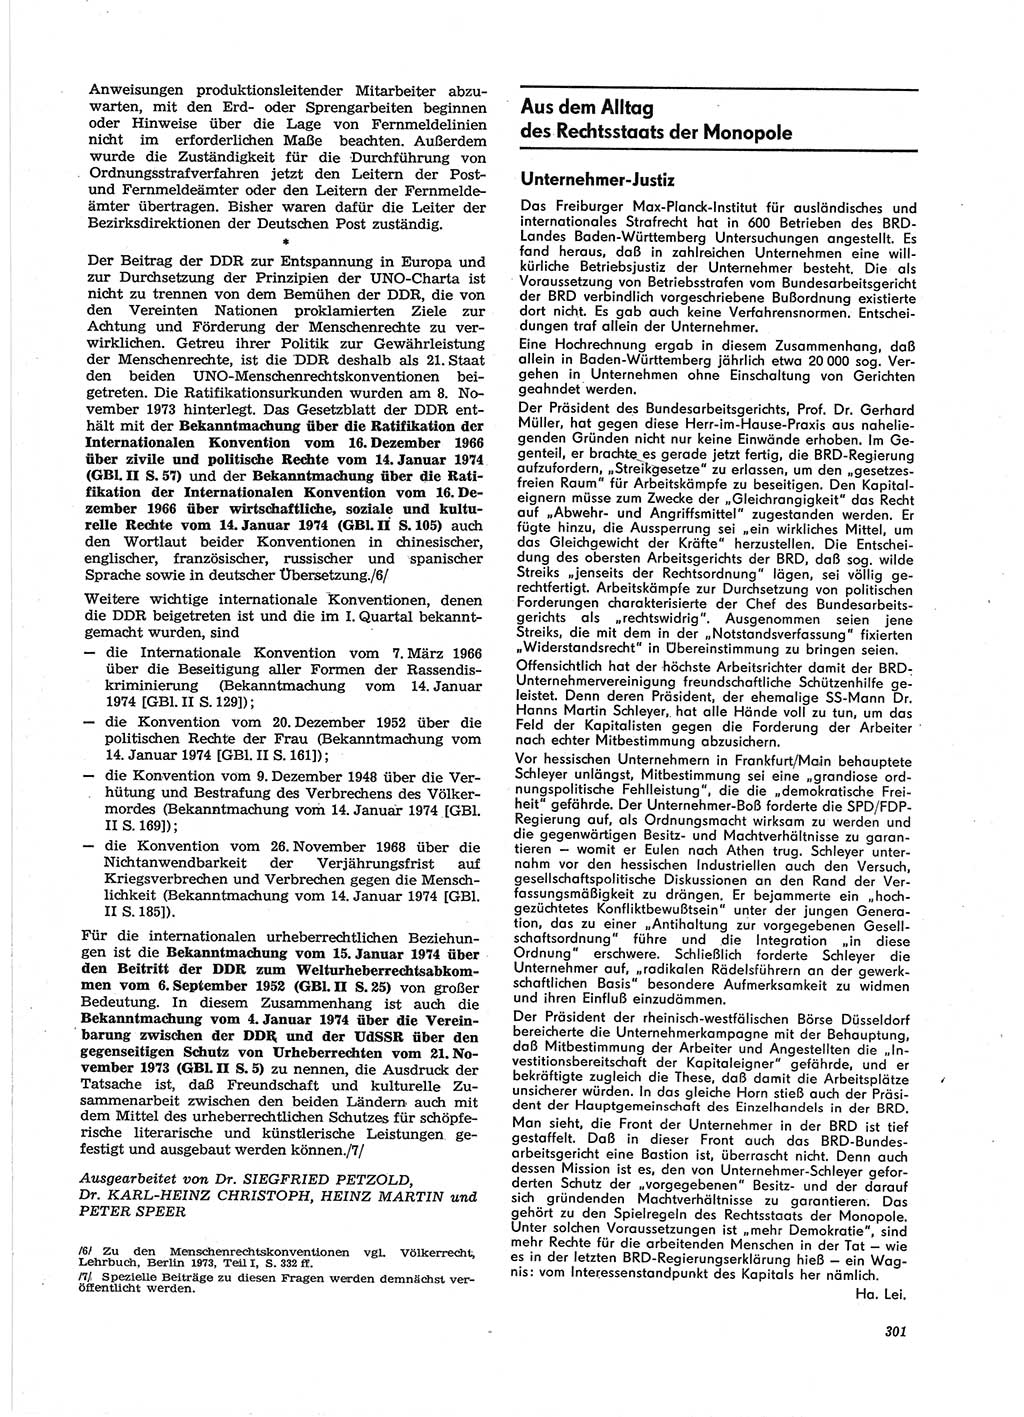 Neue Justiz (NJ), Zeitschrift für Recht und Rechtswissenschaft [Deutsche Demokratische Republik (DDR)], 28. Jahrgang 1974, Seite 301 (NJ DDR 1974, S. 301)